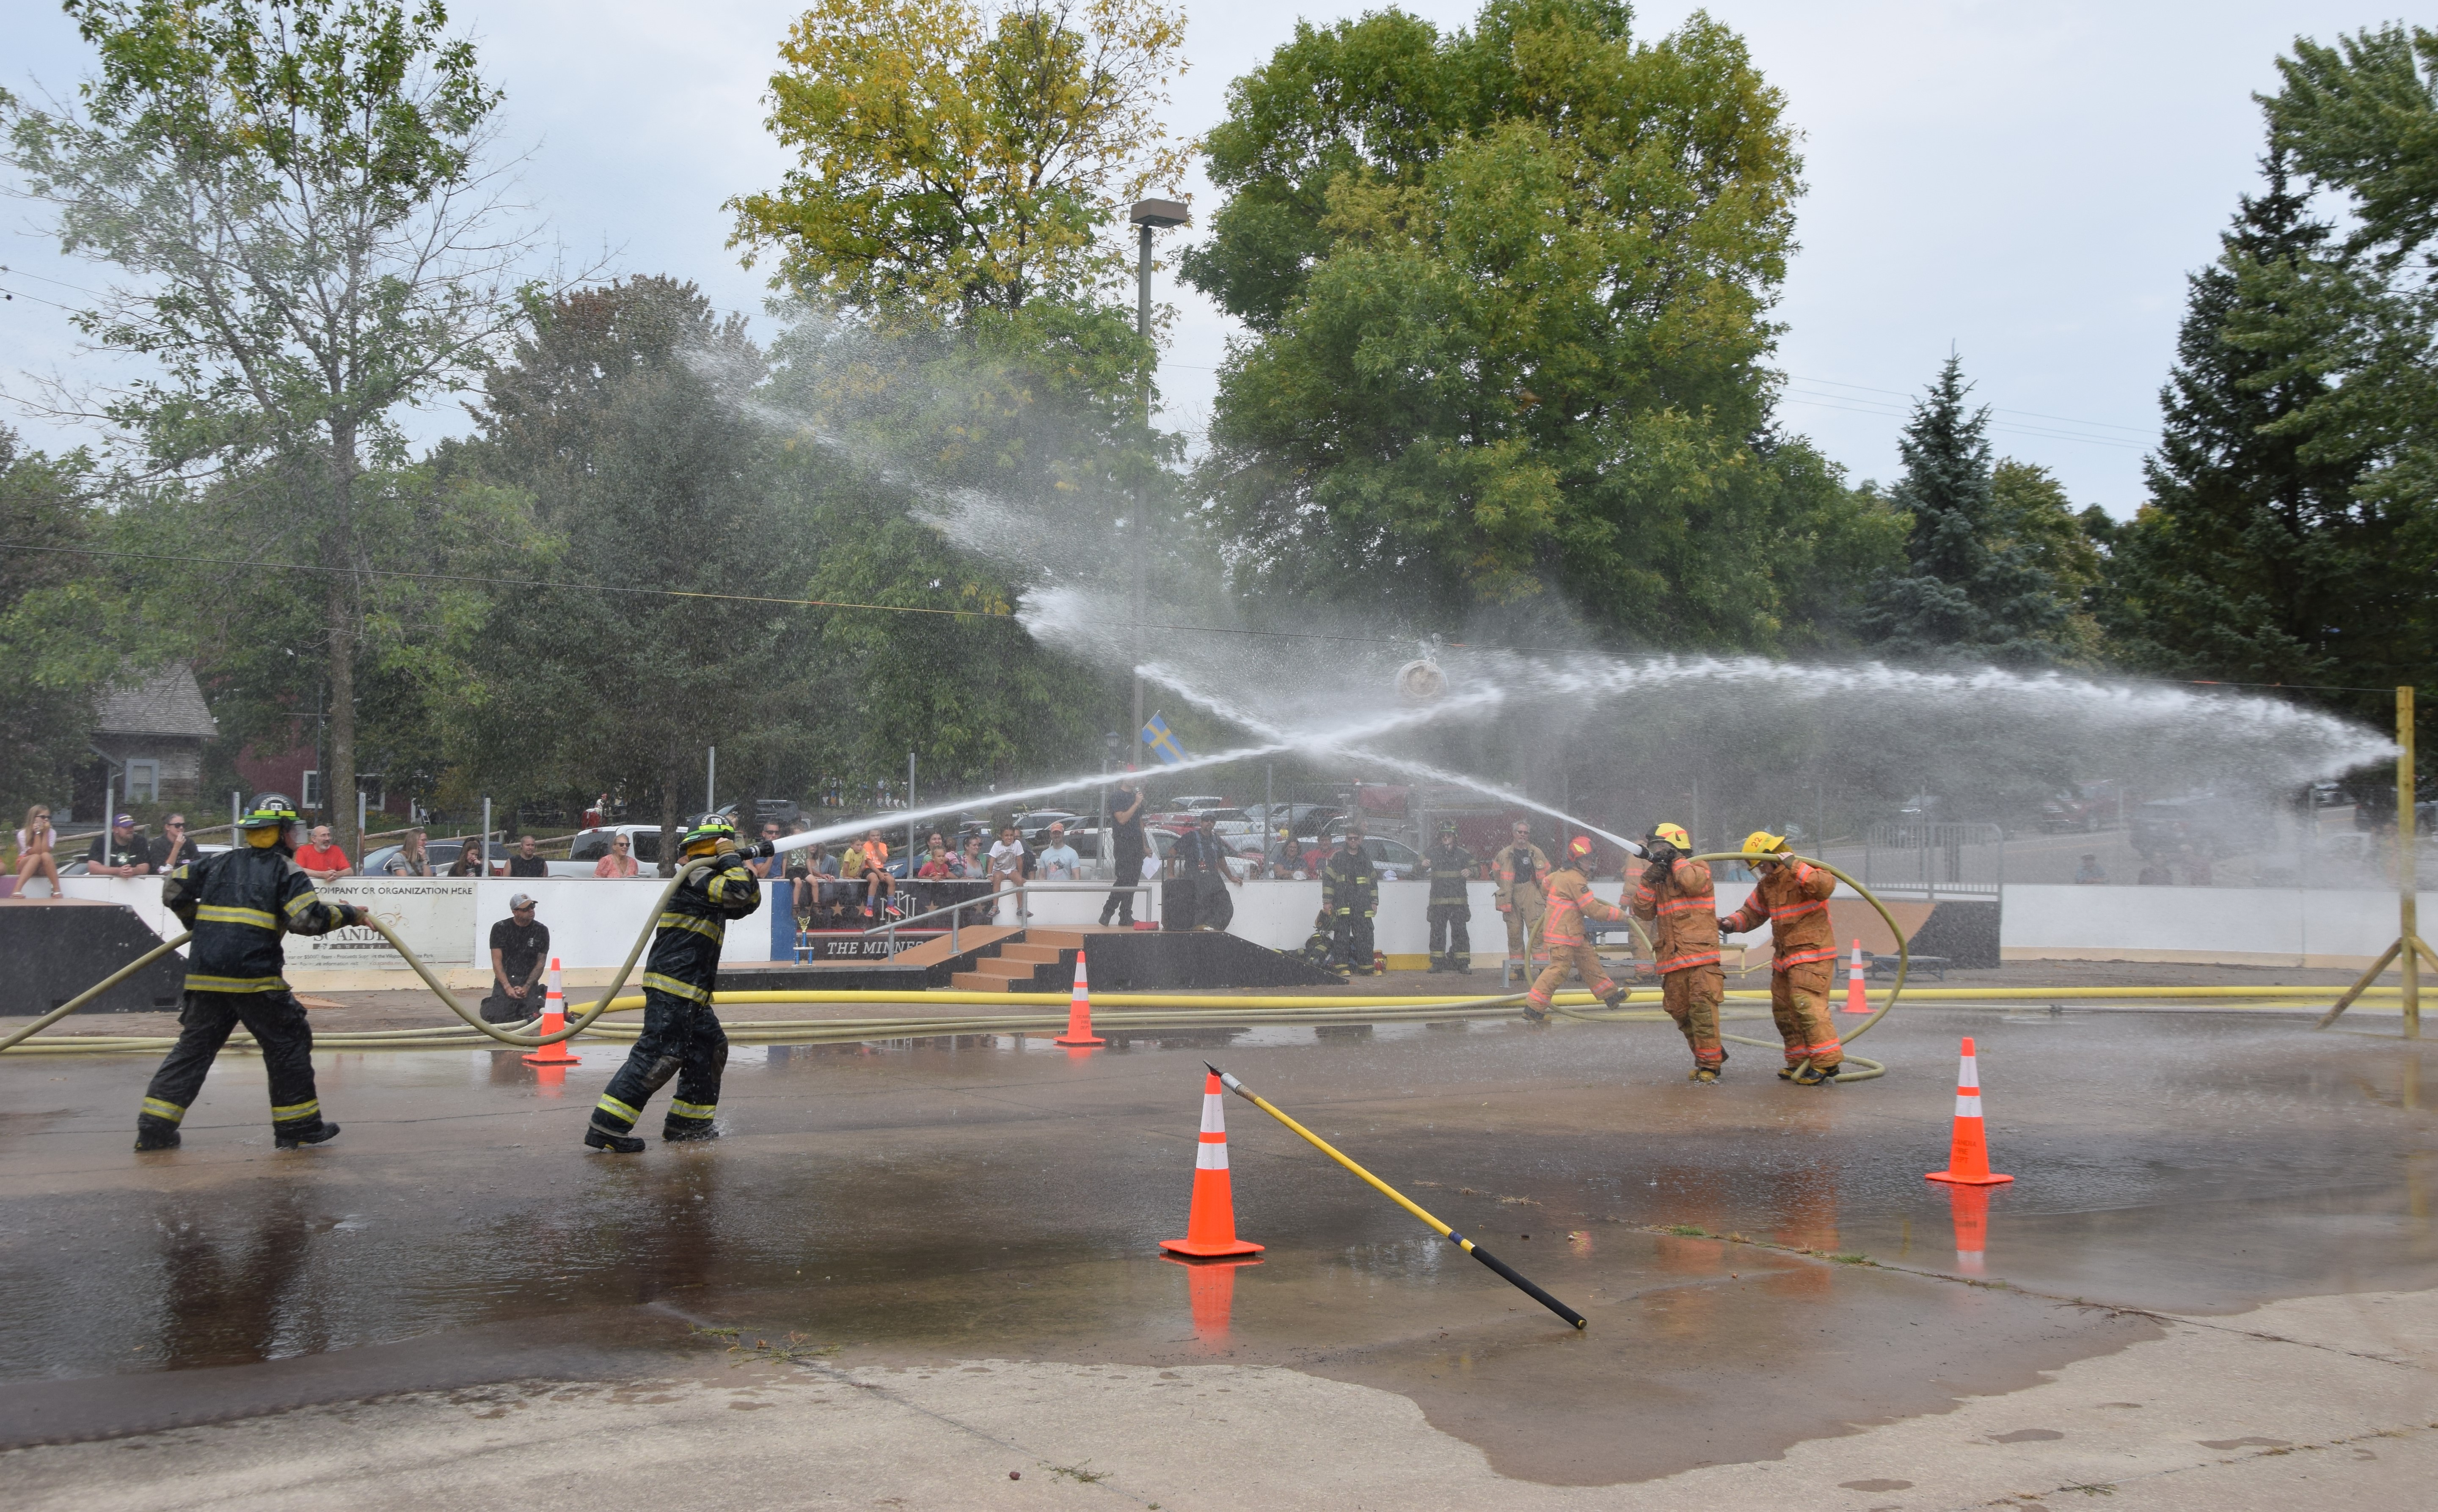 Brandmän tävlar i vattenkrig med brandslangar